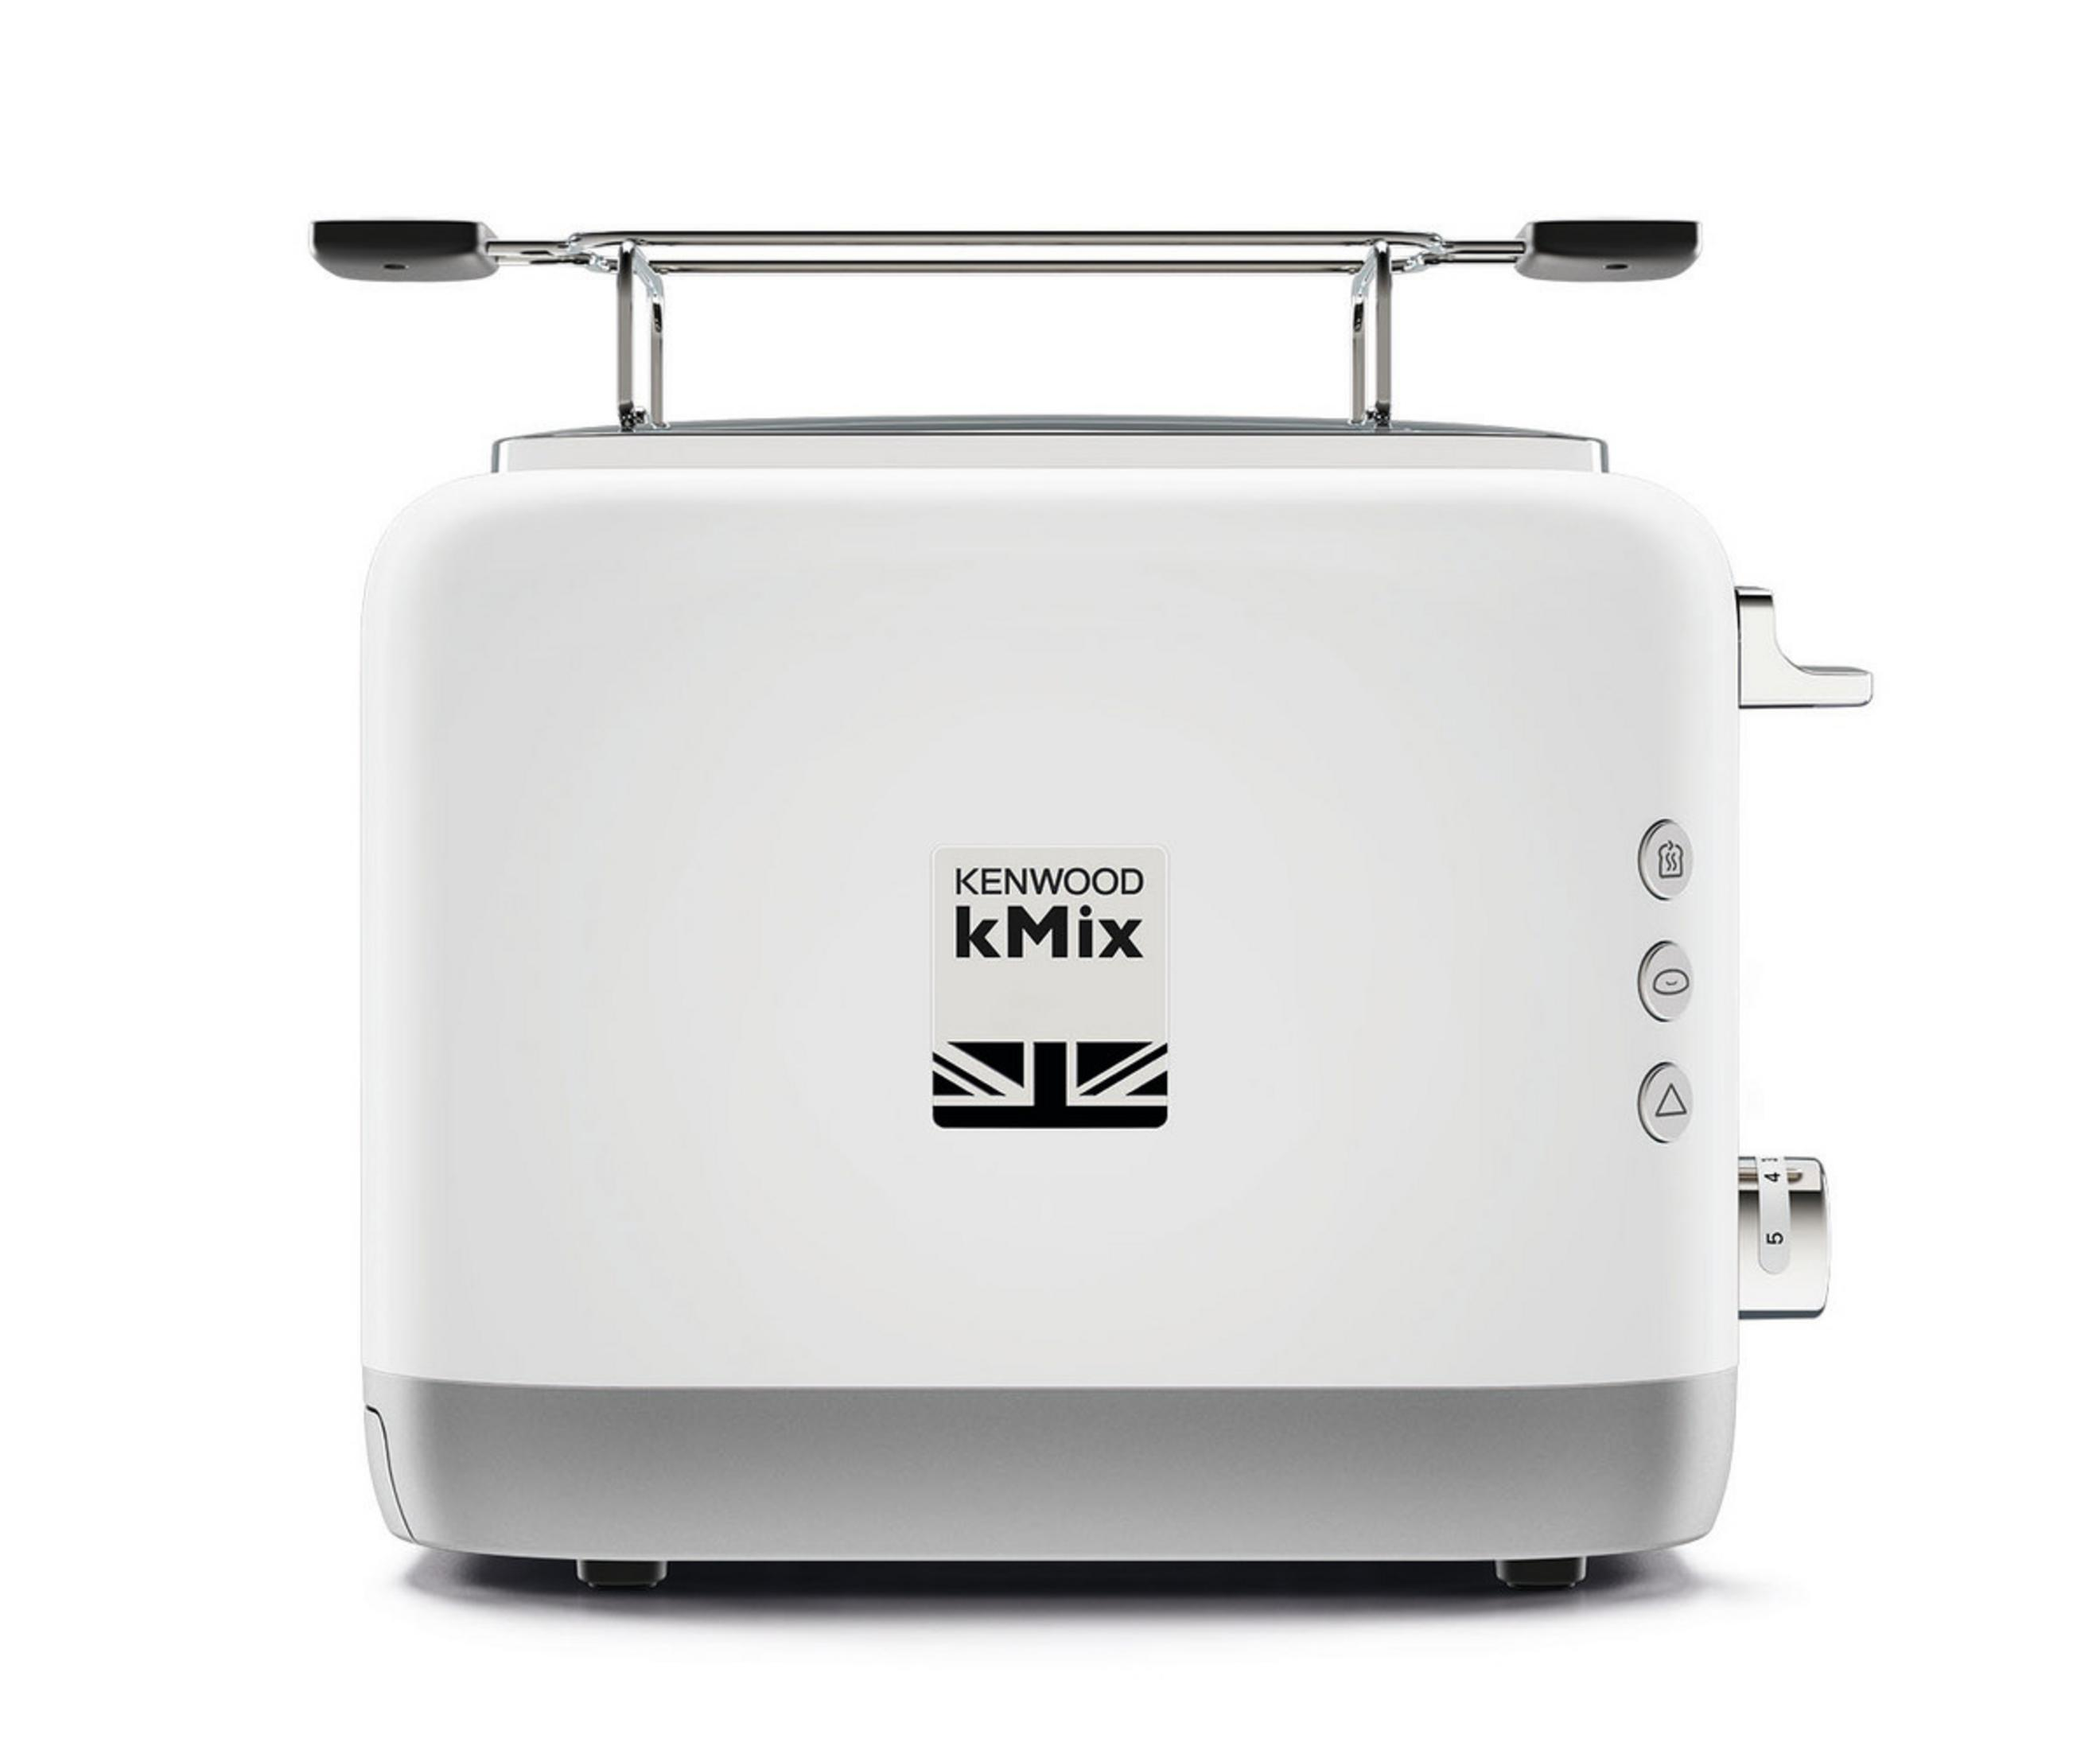 KENWOOD WH TCX 751 KMIX Schlitze: 2-SCHLITZ-TOASTER 900W Toaster 2) Watt, (900 Weiß